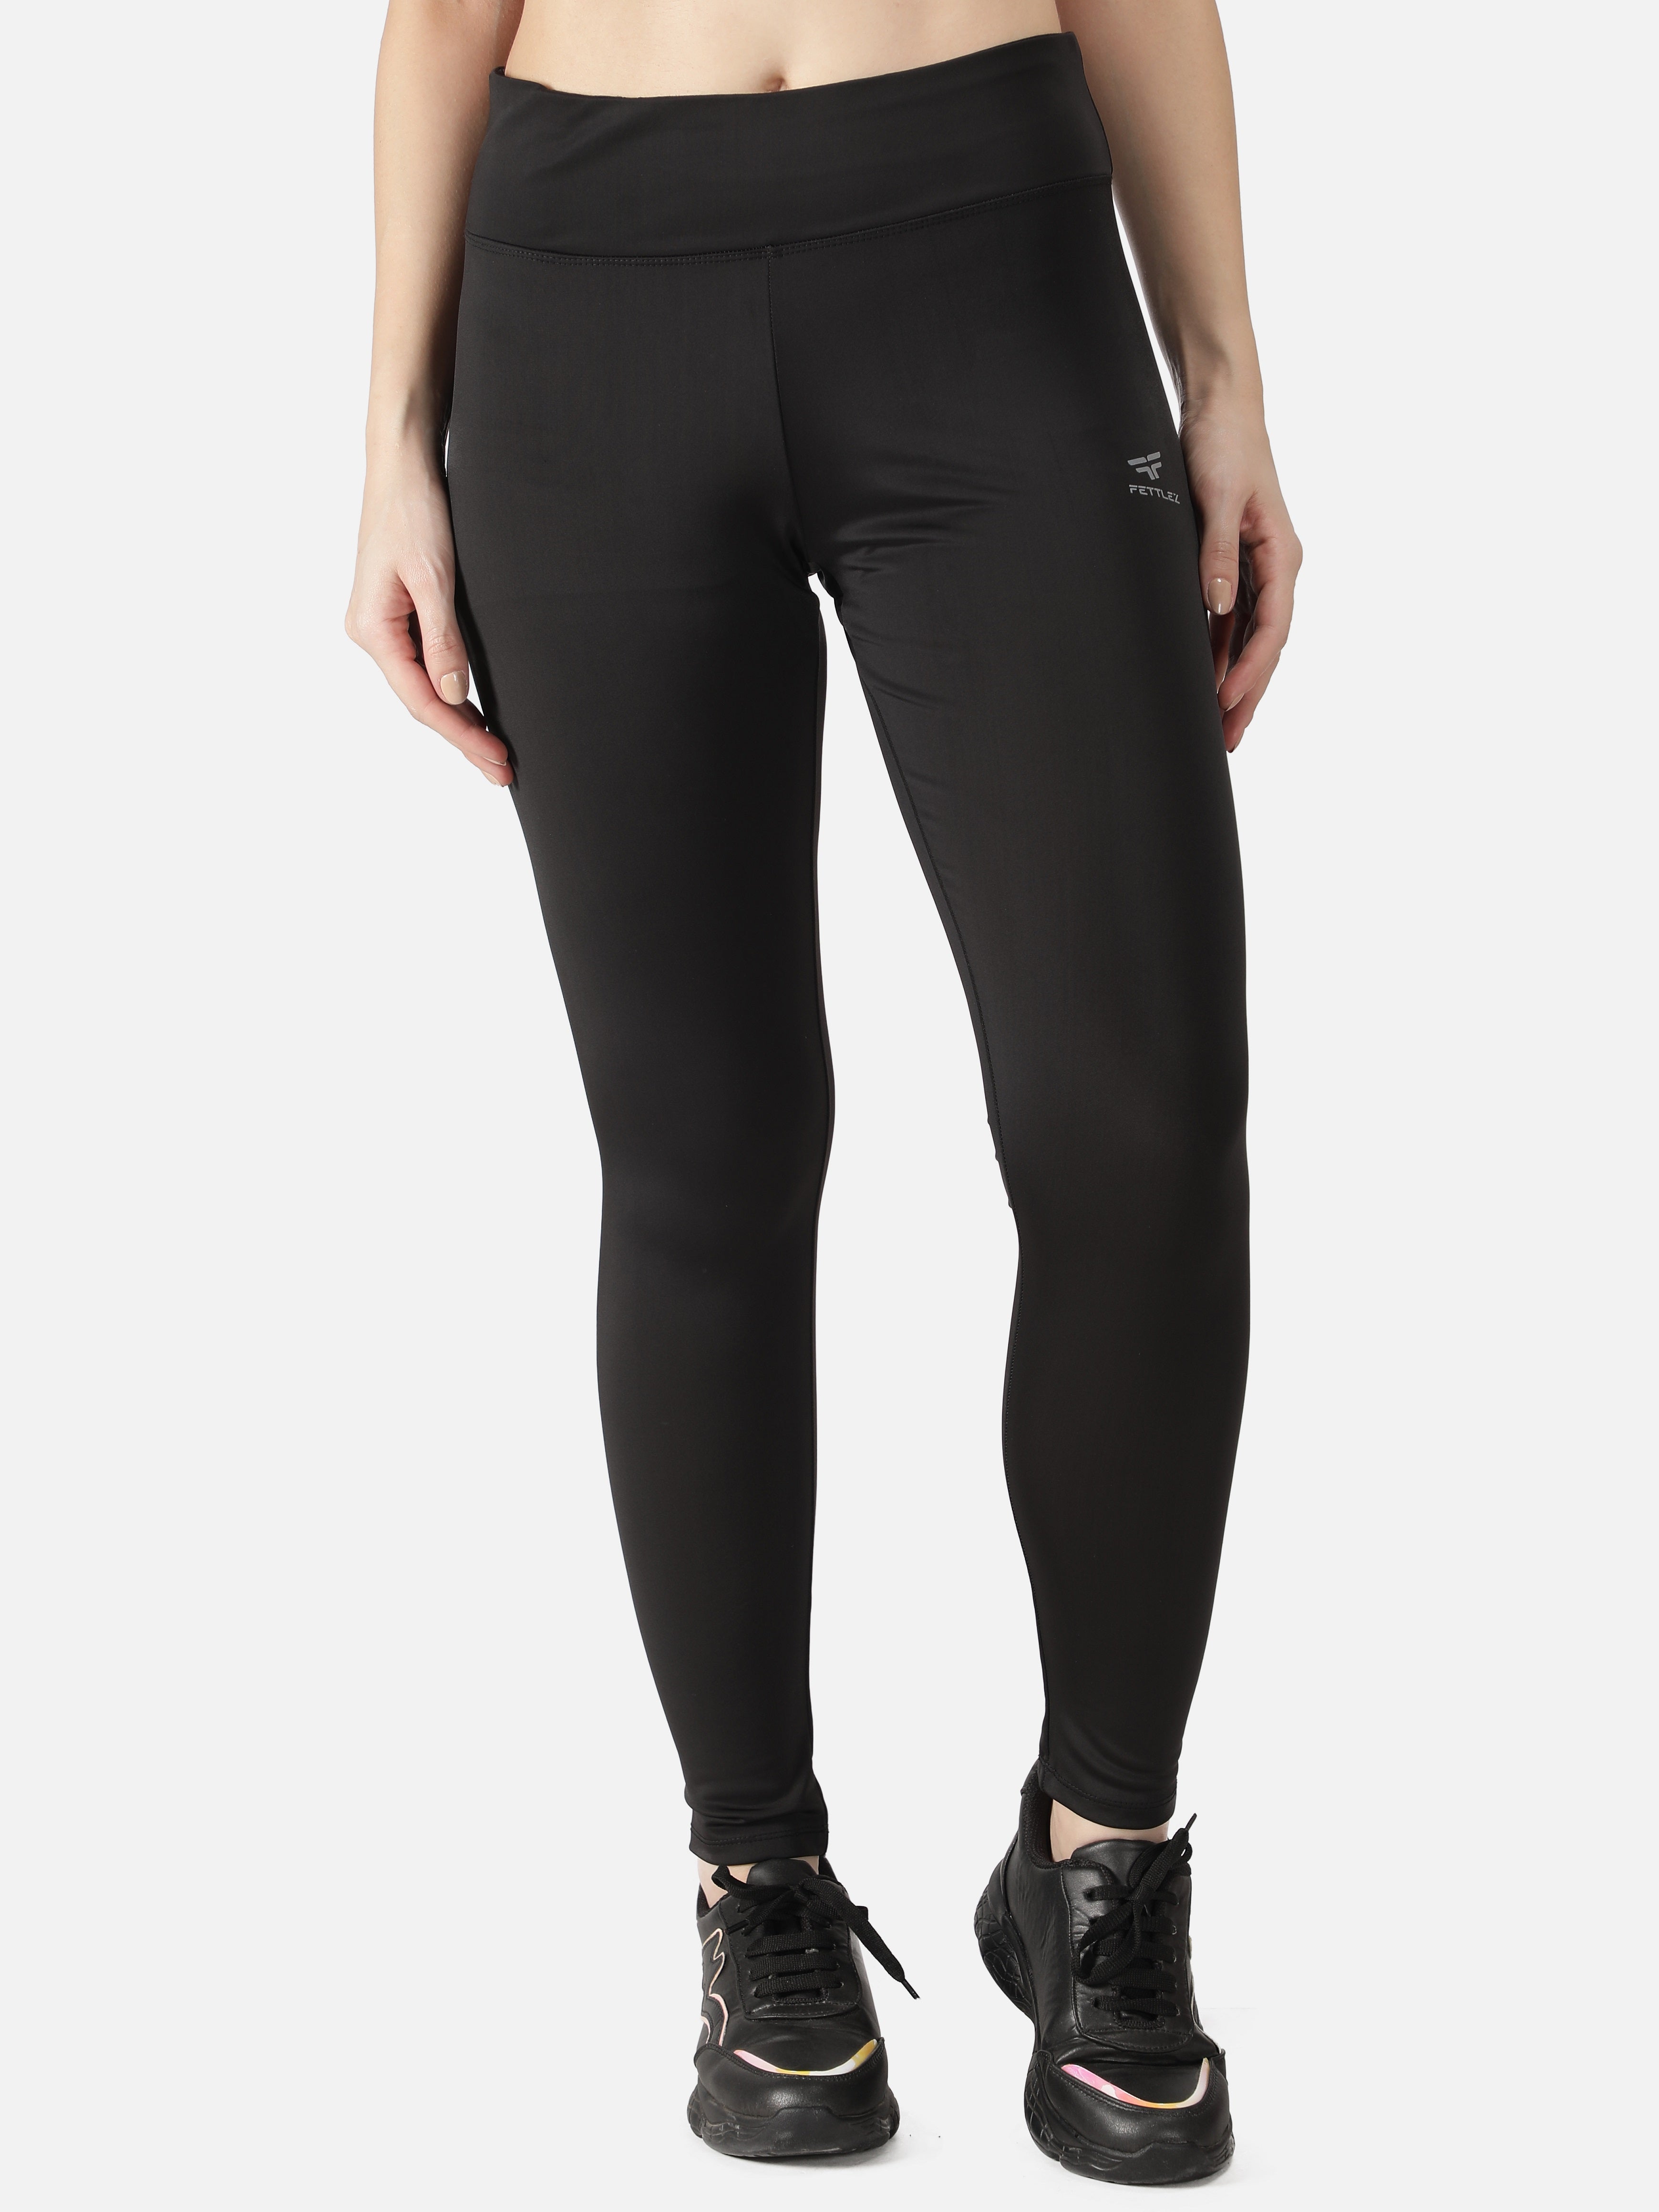 Adidas Leggings Women M Black Three Stripe Aeroready High Rise Athletic Gym  Yoga : r/gym_apparel_for_women